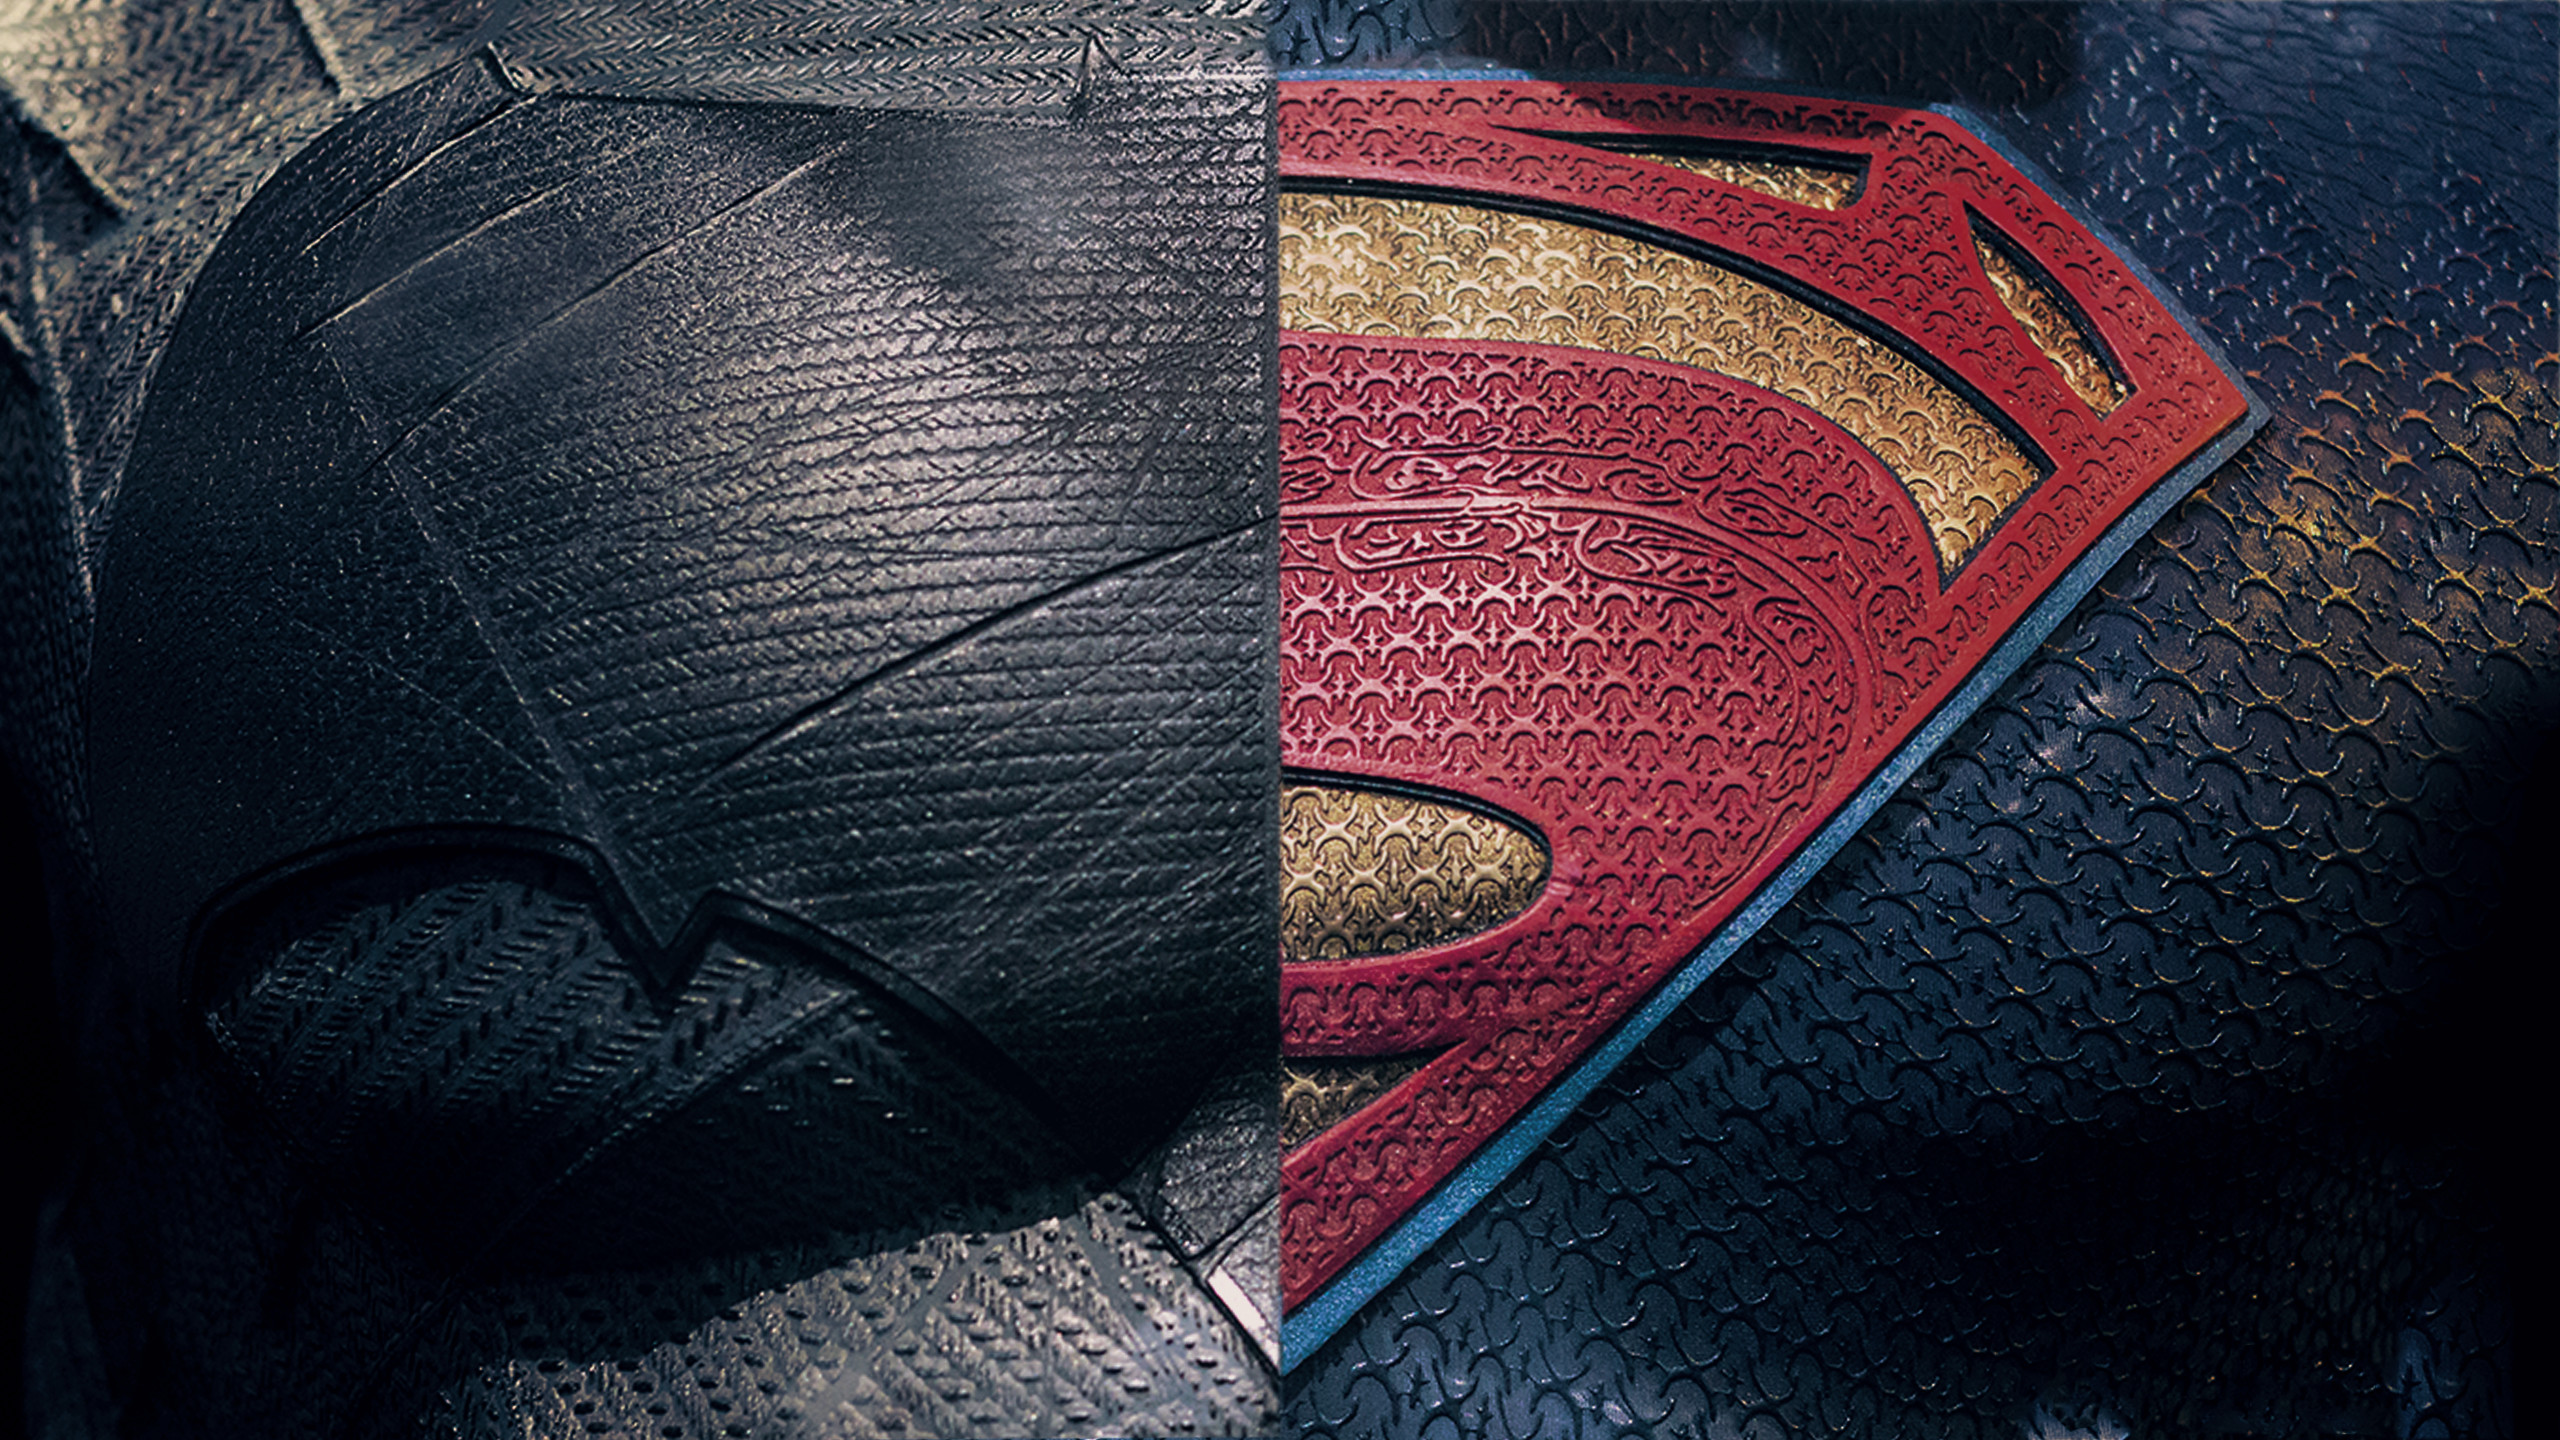 2560x1440 batman vs superman movie best hd wallpaper